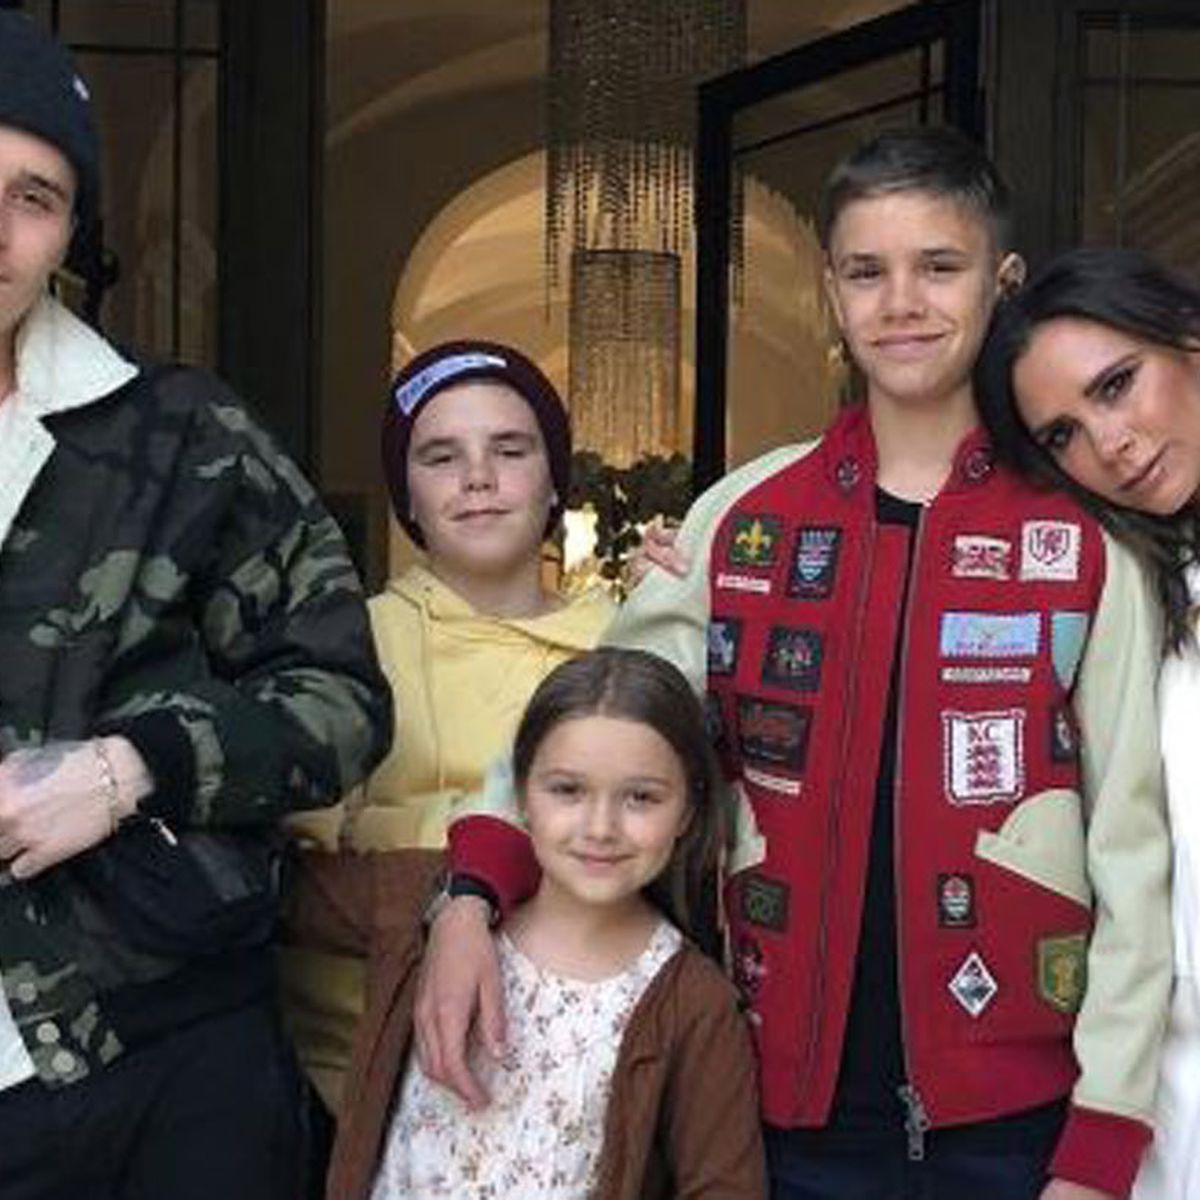 Harper Beckham – Victoria and David's kid